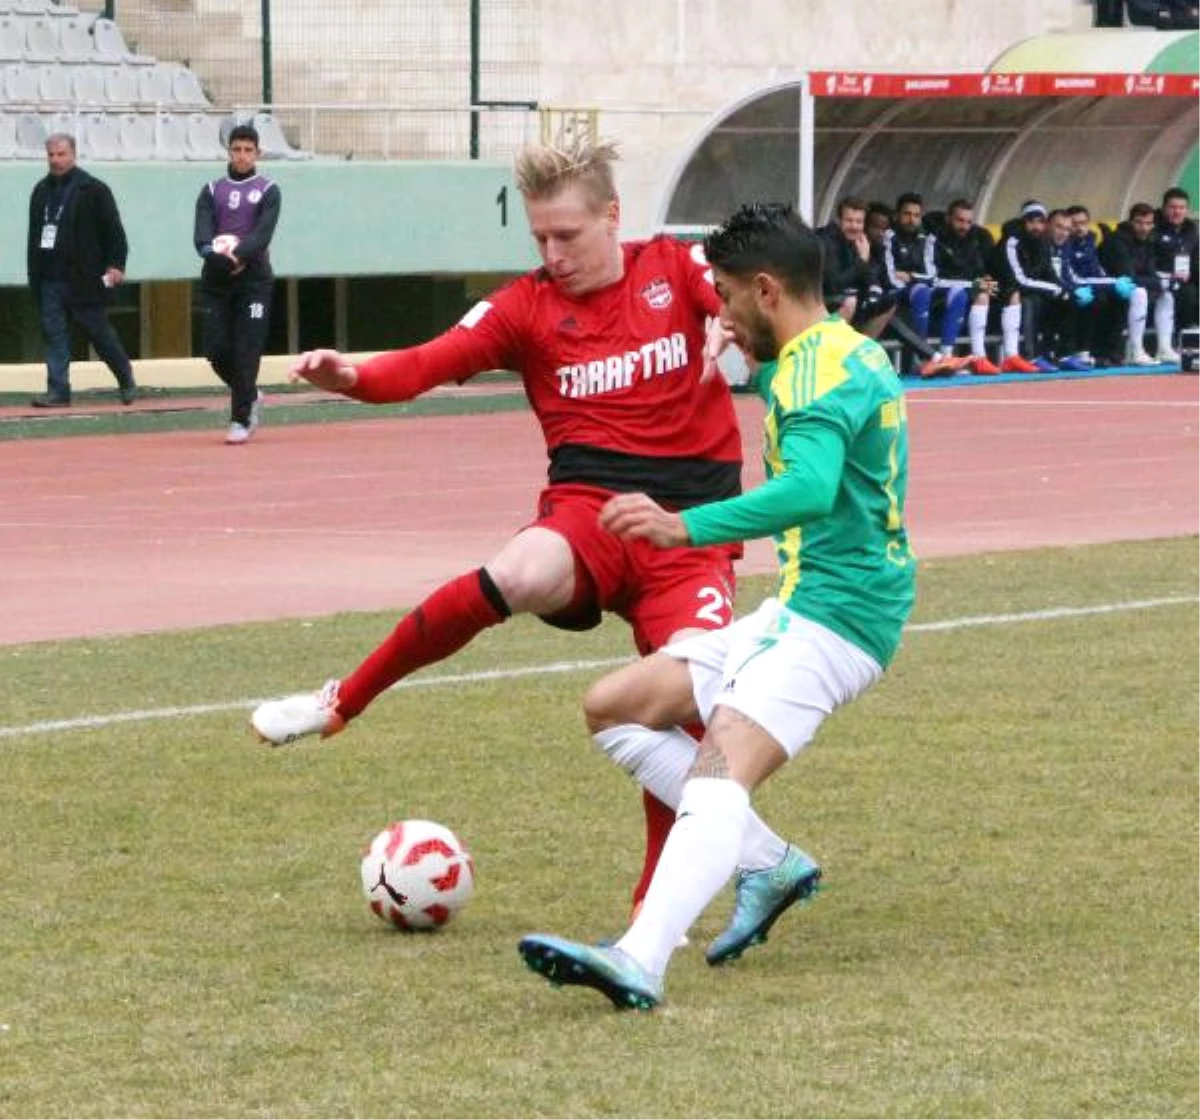 Şanlıurfaspor-Gaziantepspor: 1-0 (Ziraat Türkiye Kupası)